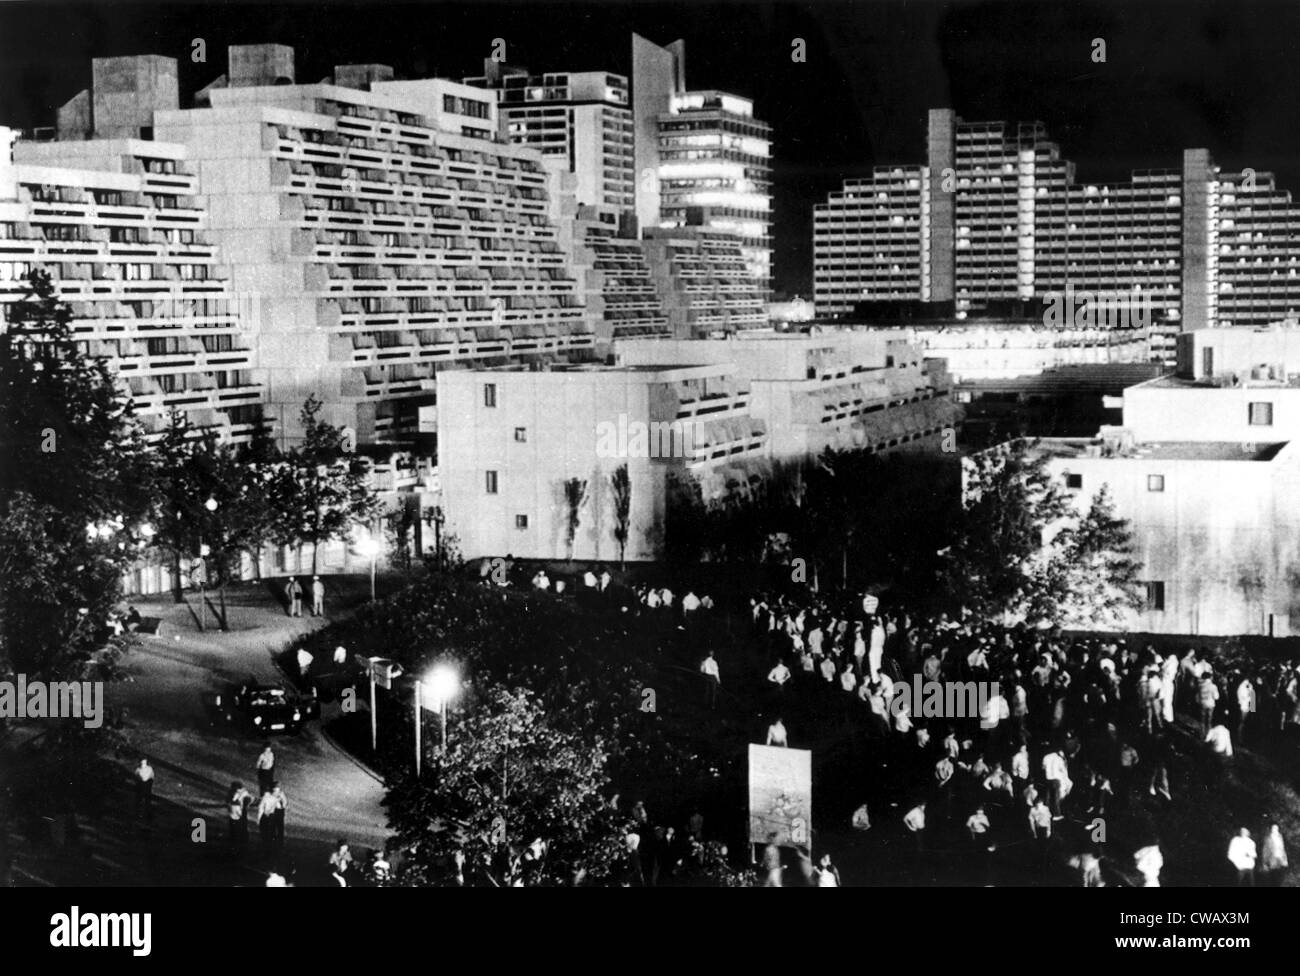 Olympiade 1972, Nachtansicht von Wohnungen im Olympischen Dorf, München, 05.09.1972... Höflichkeit: CSU Archive / Everett Stockfoto